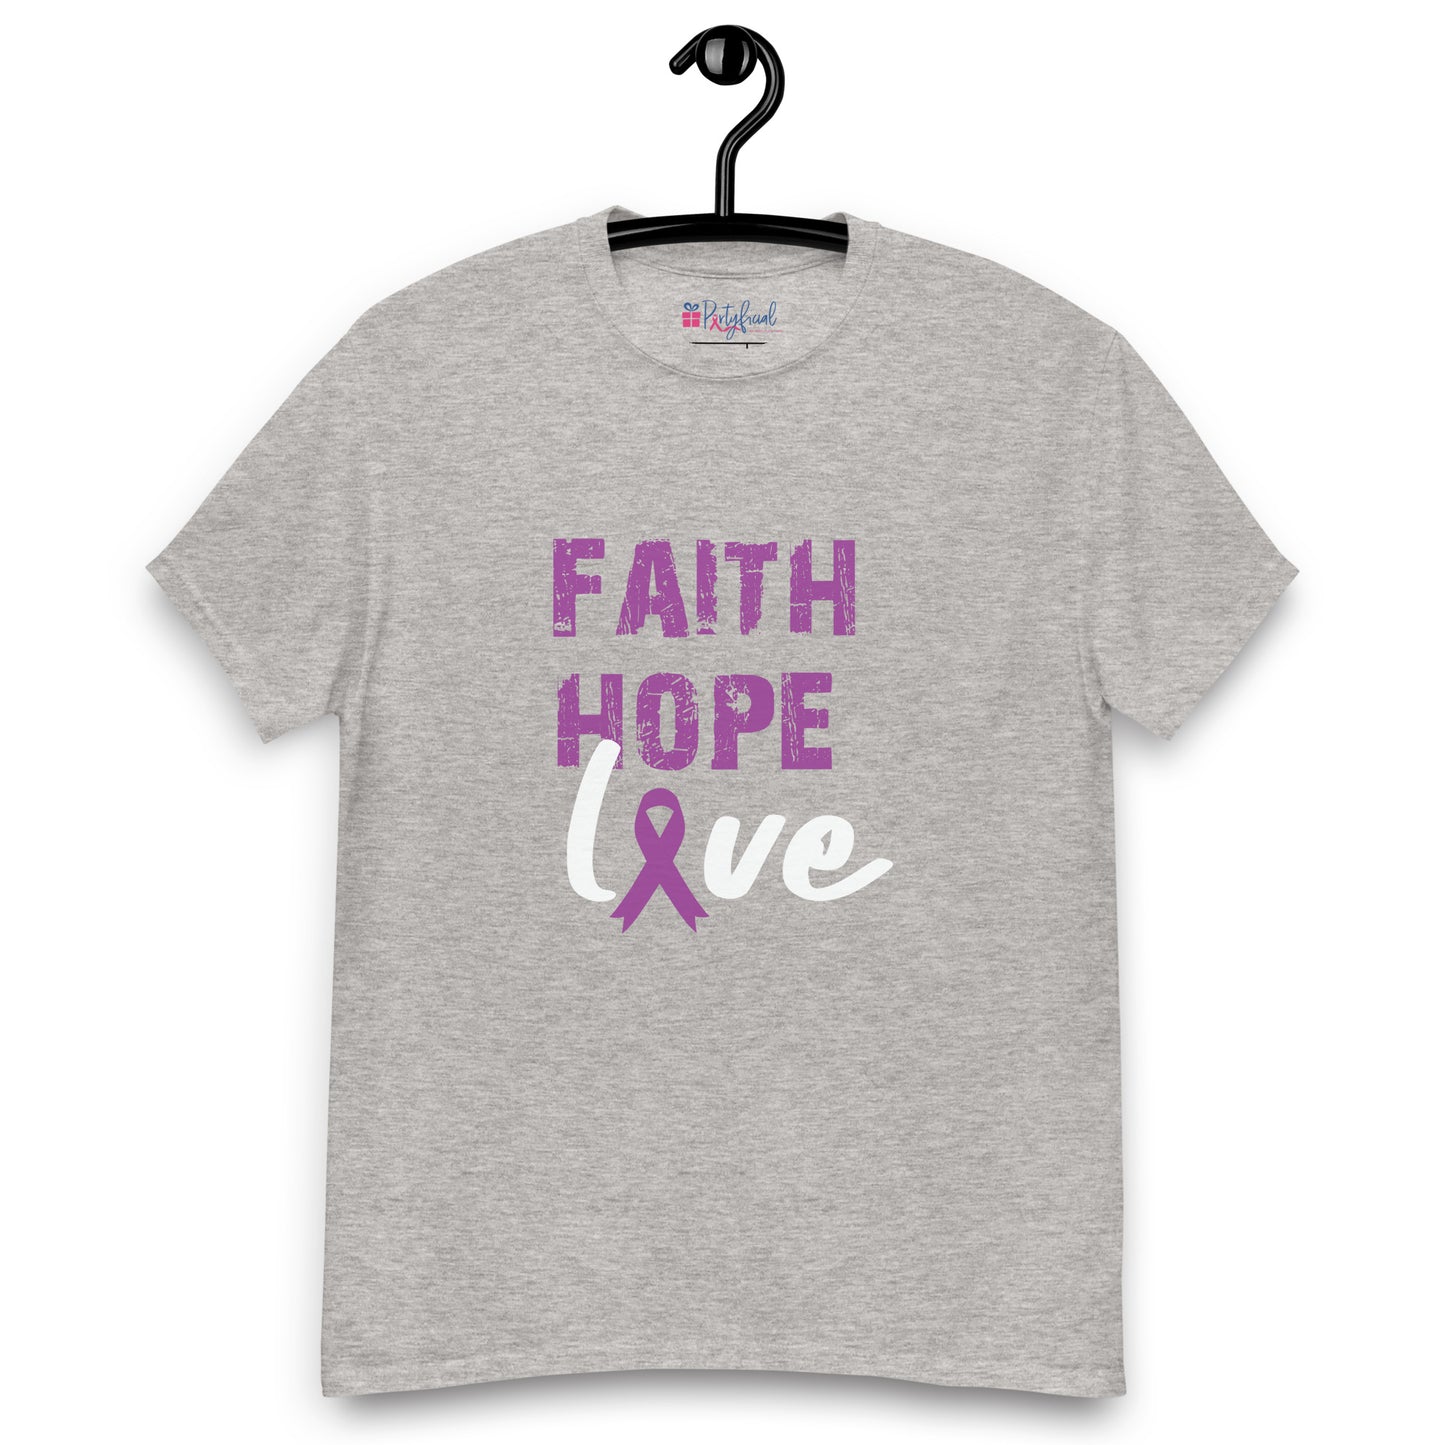 Faith Hope Love tee